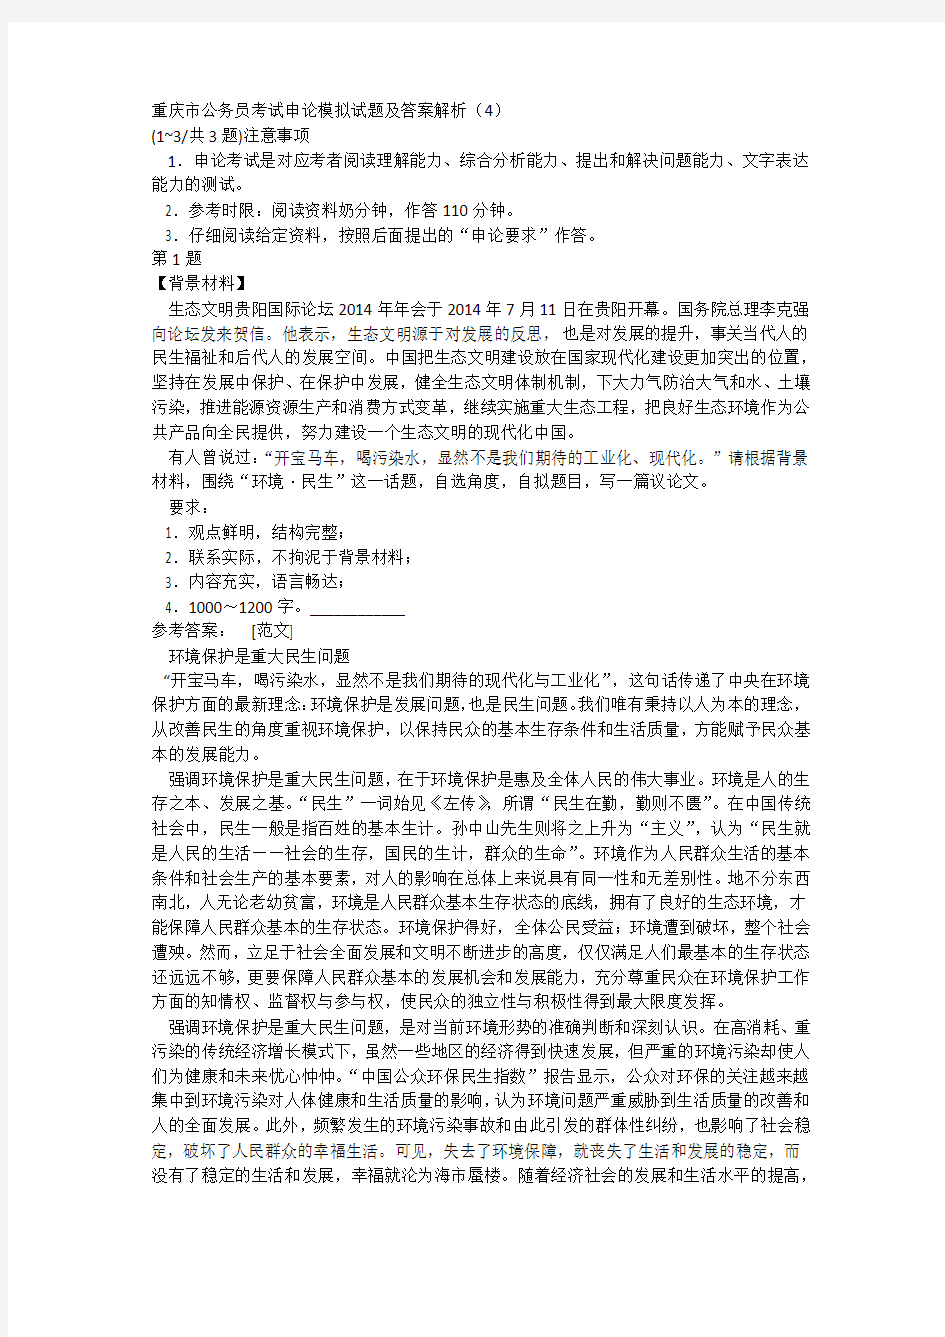 重庆市公务员考试申论模拟试题及答案解析(4)